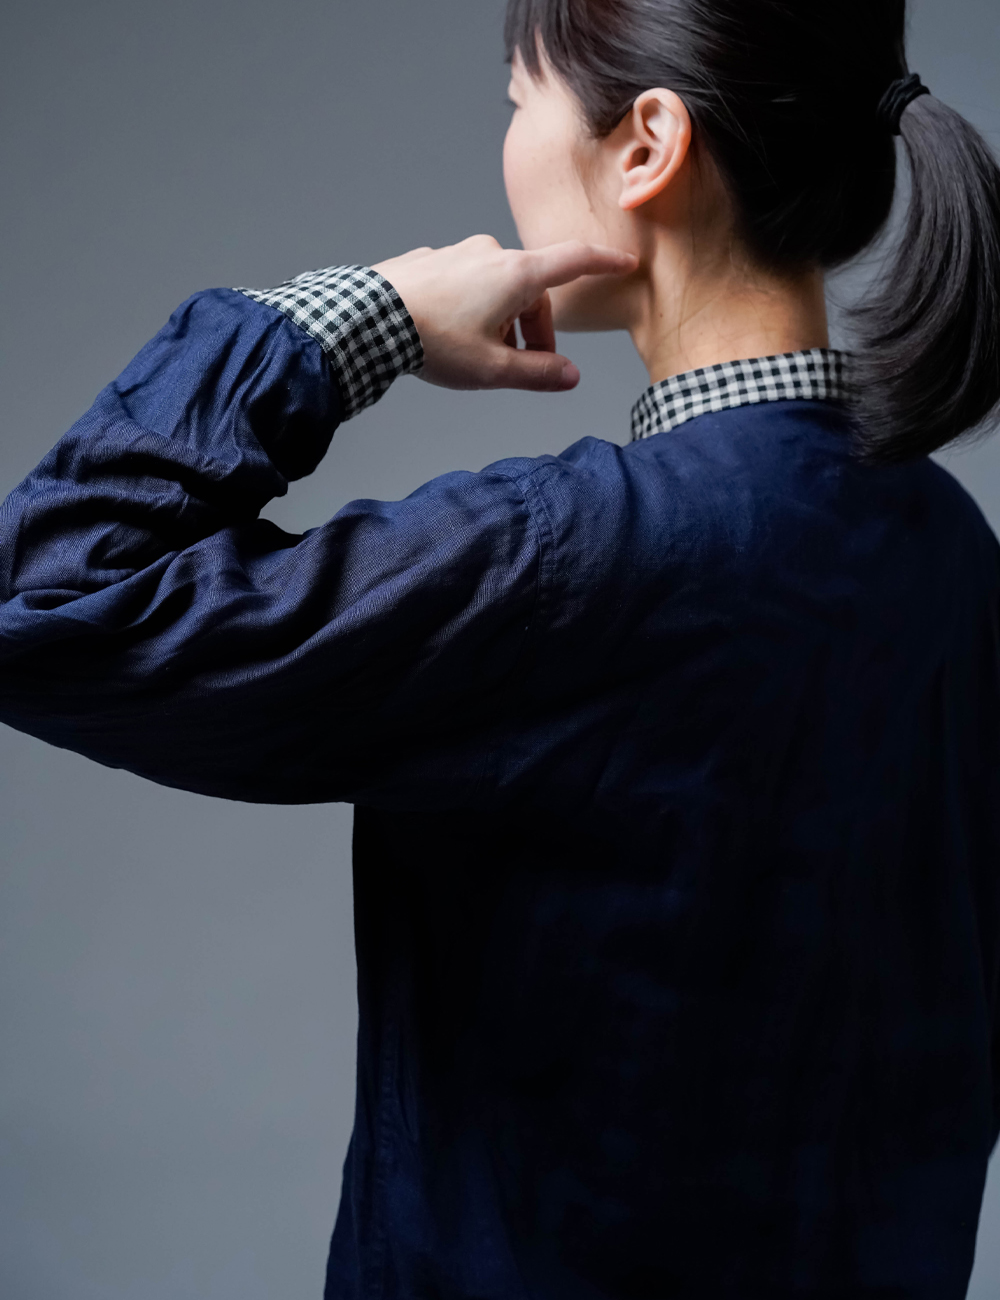 【早割】襟袖チェック柄 スタンドカラーシャツ / 留紺 t036e-tmk1